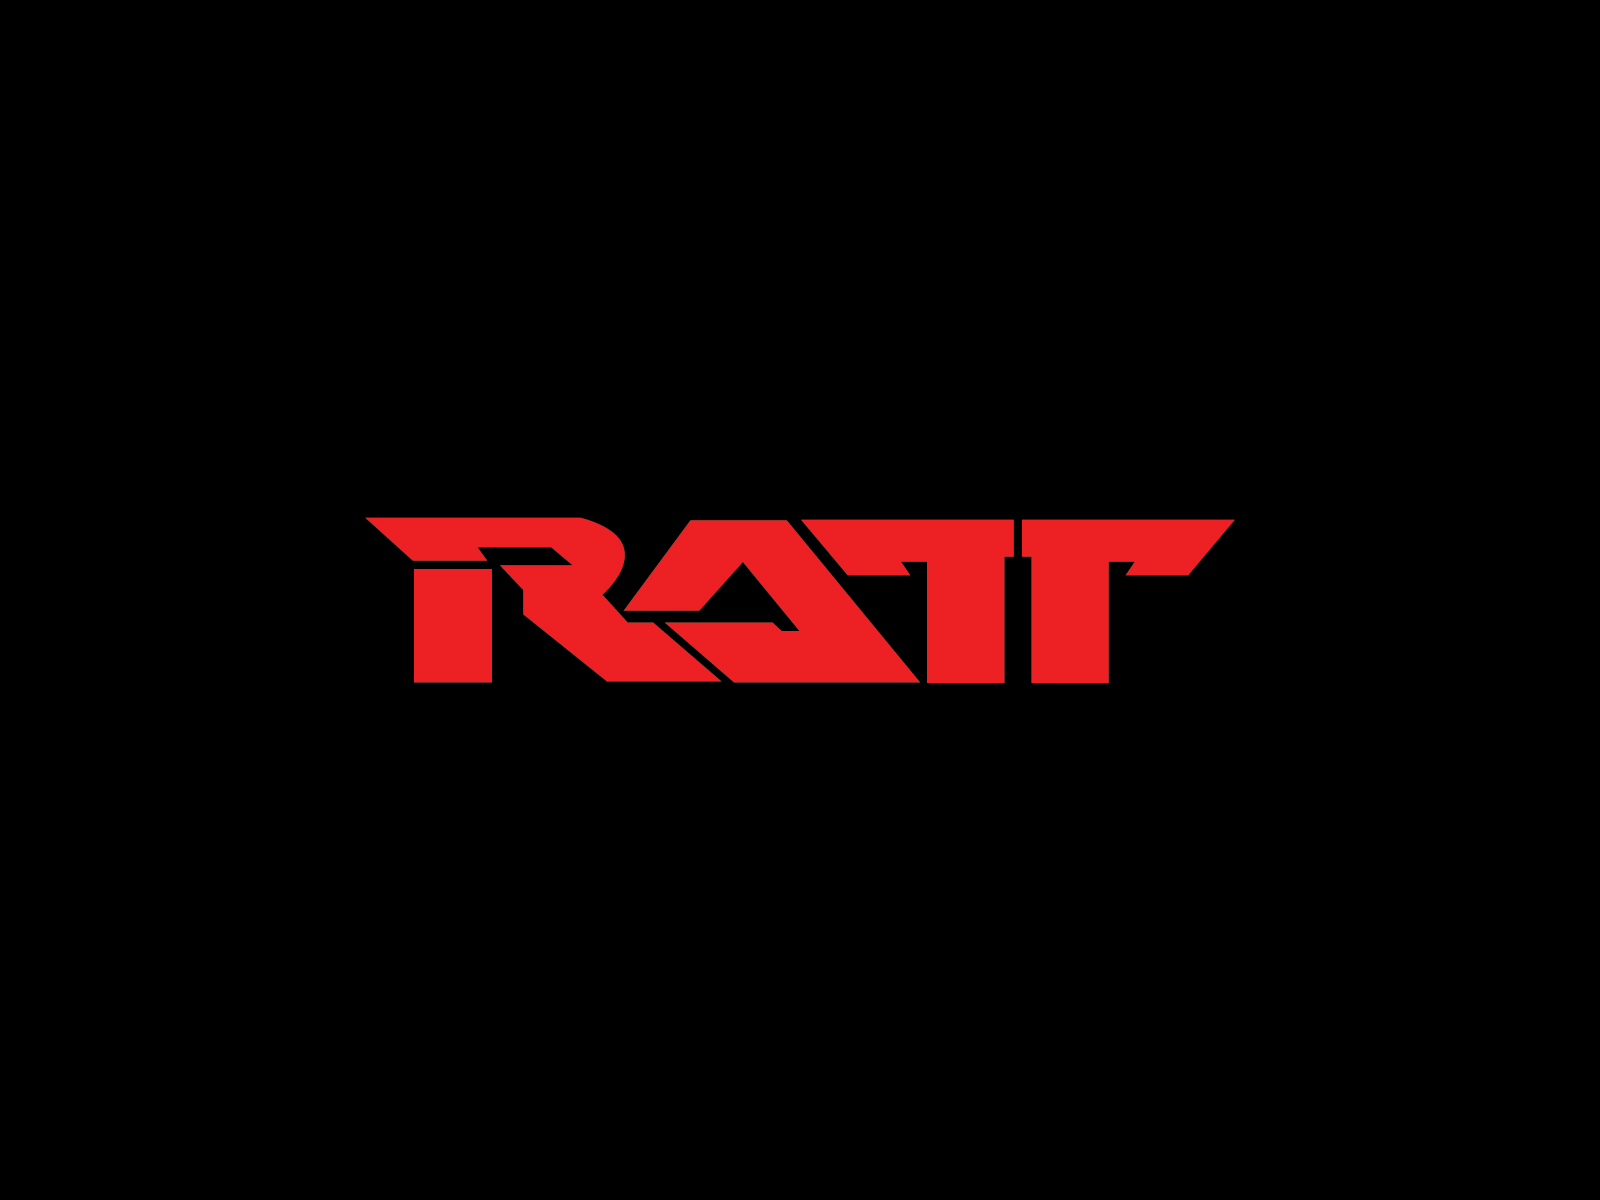 Ratt band logo and wallpaper | Band logos - Rock band logos, metal bands  logos, punk bands logos